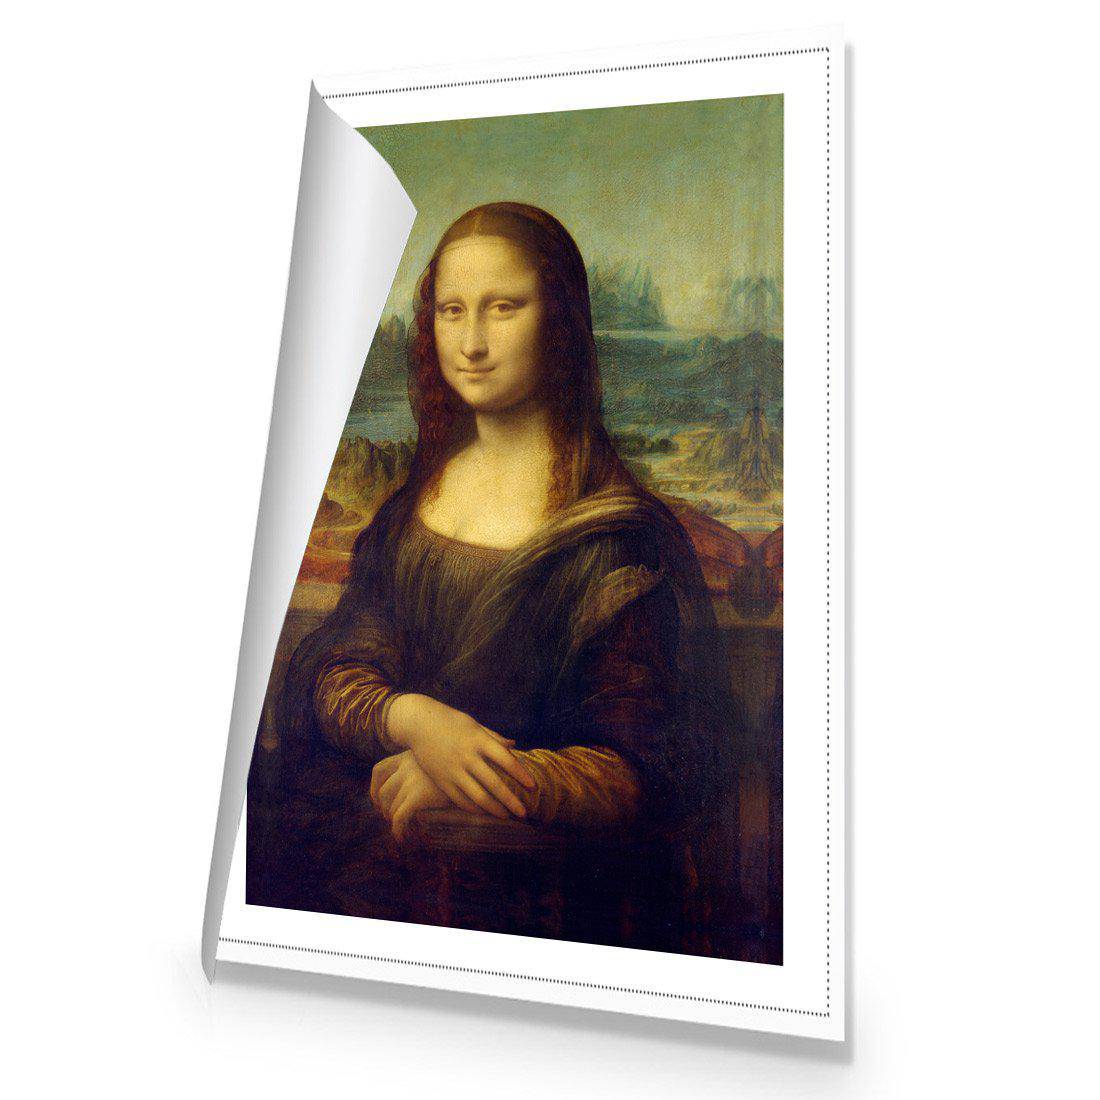 Mona Lisa - Da Vinci Canvas Art-Canvas-Wall Art Designs-45x30cm-Rolled Canvas-Wall Art Designs